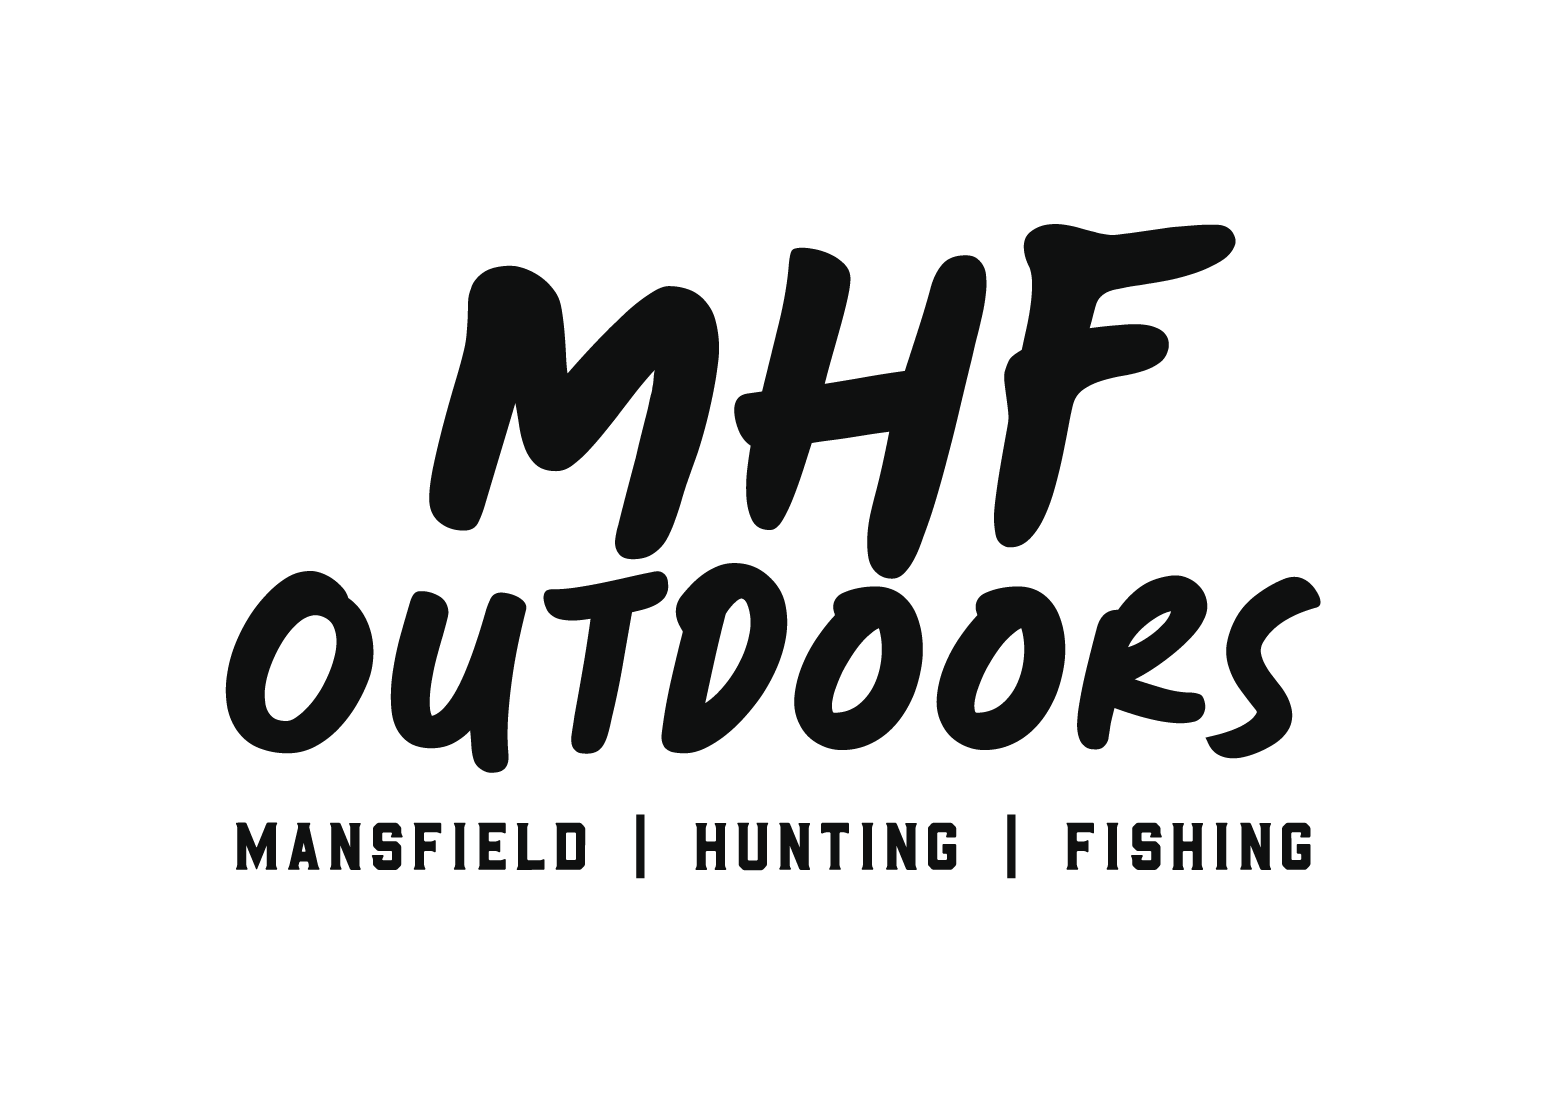 Mansfield Hunting & Fishing - MDBA